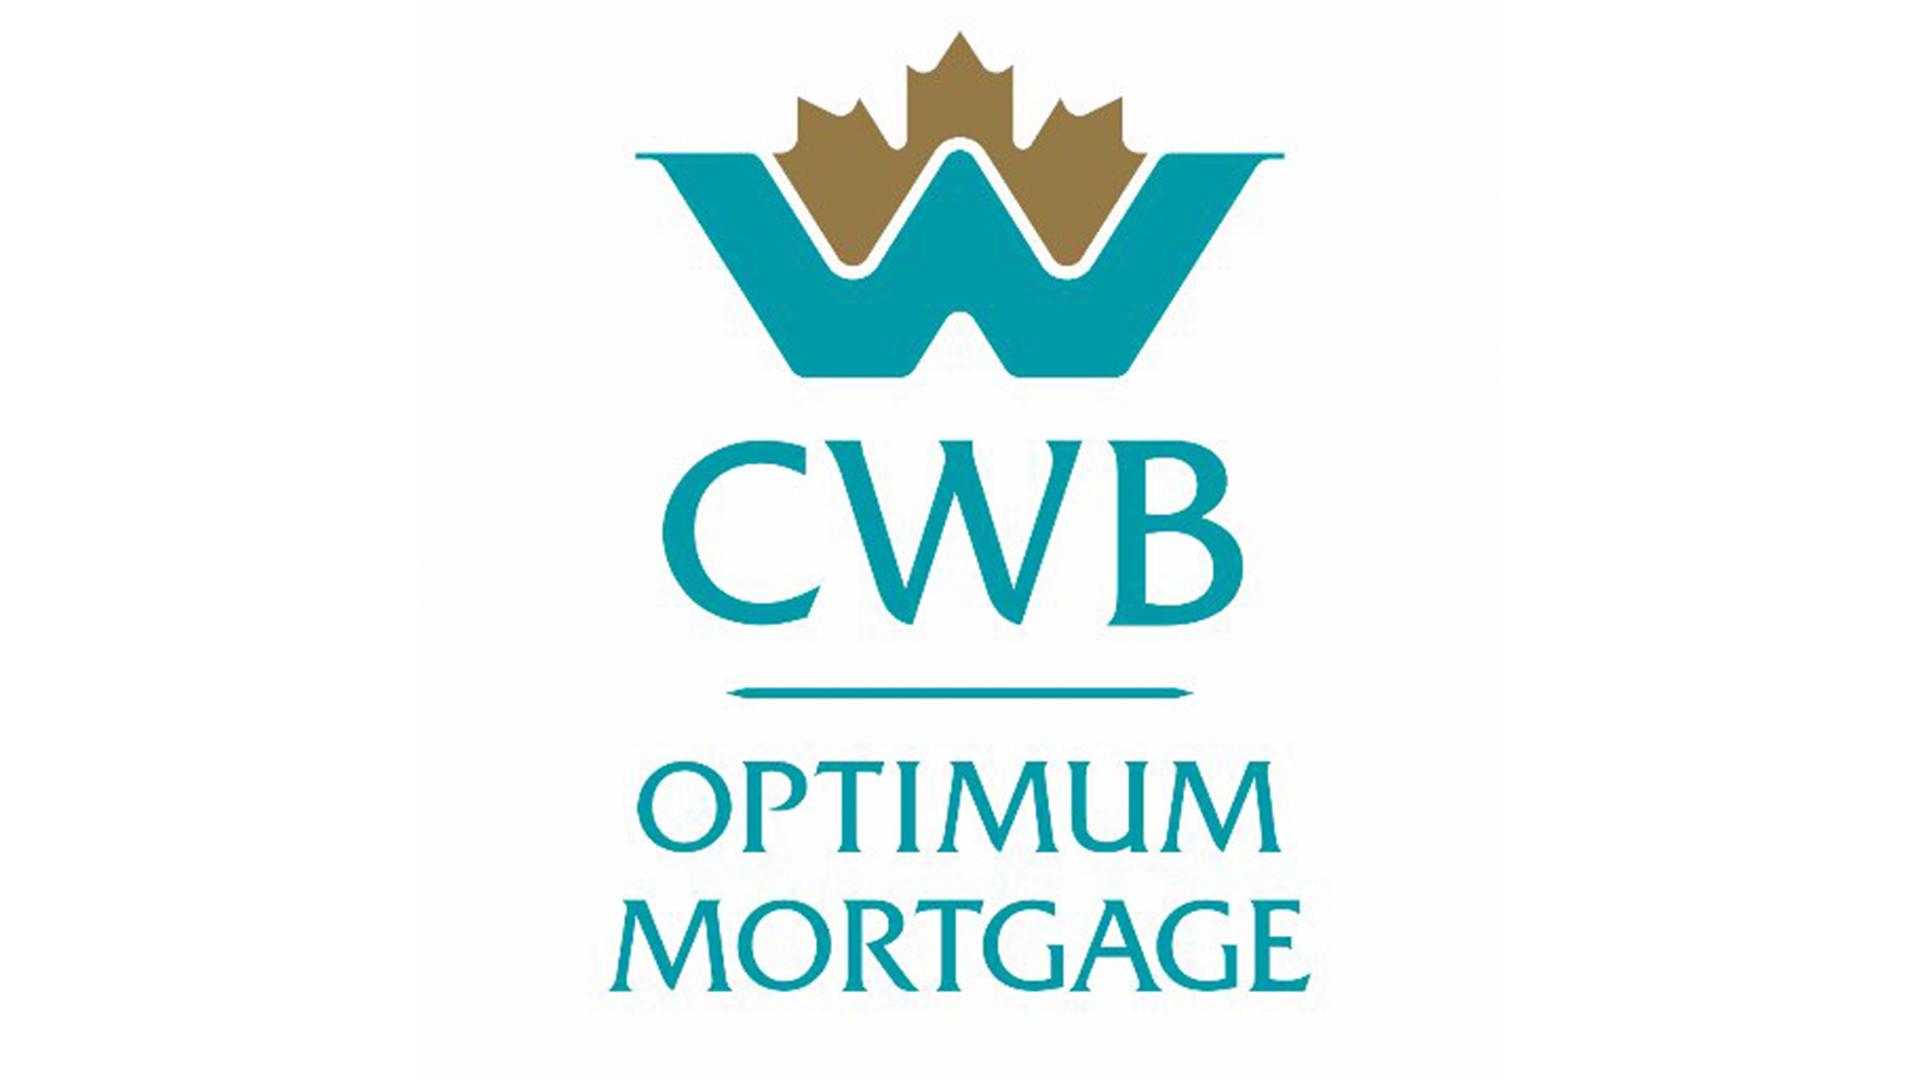 Optimum Mortgage